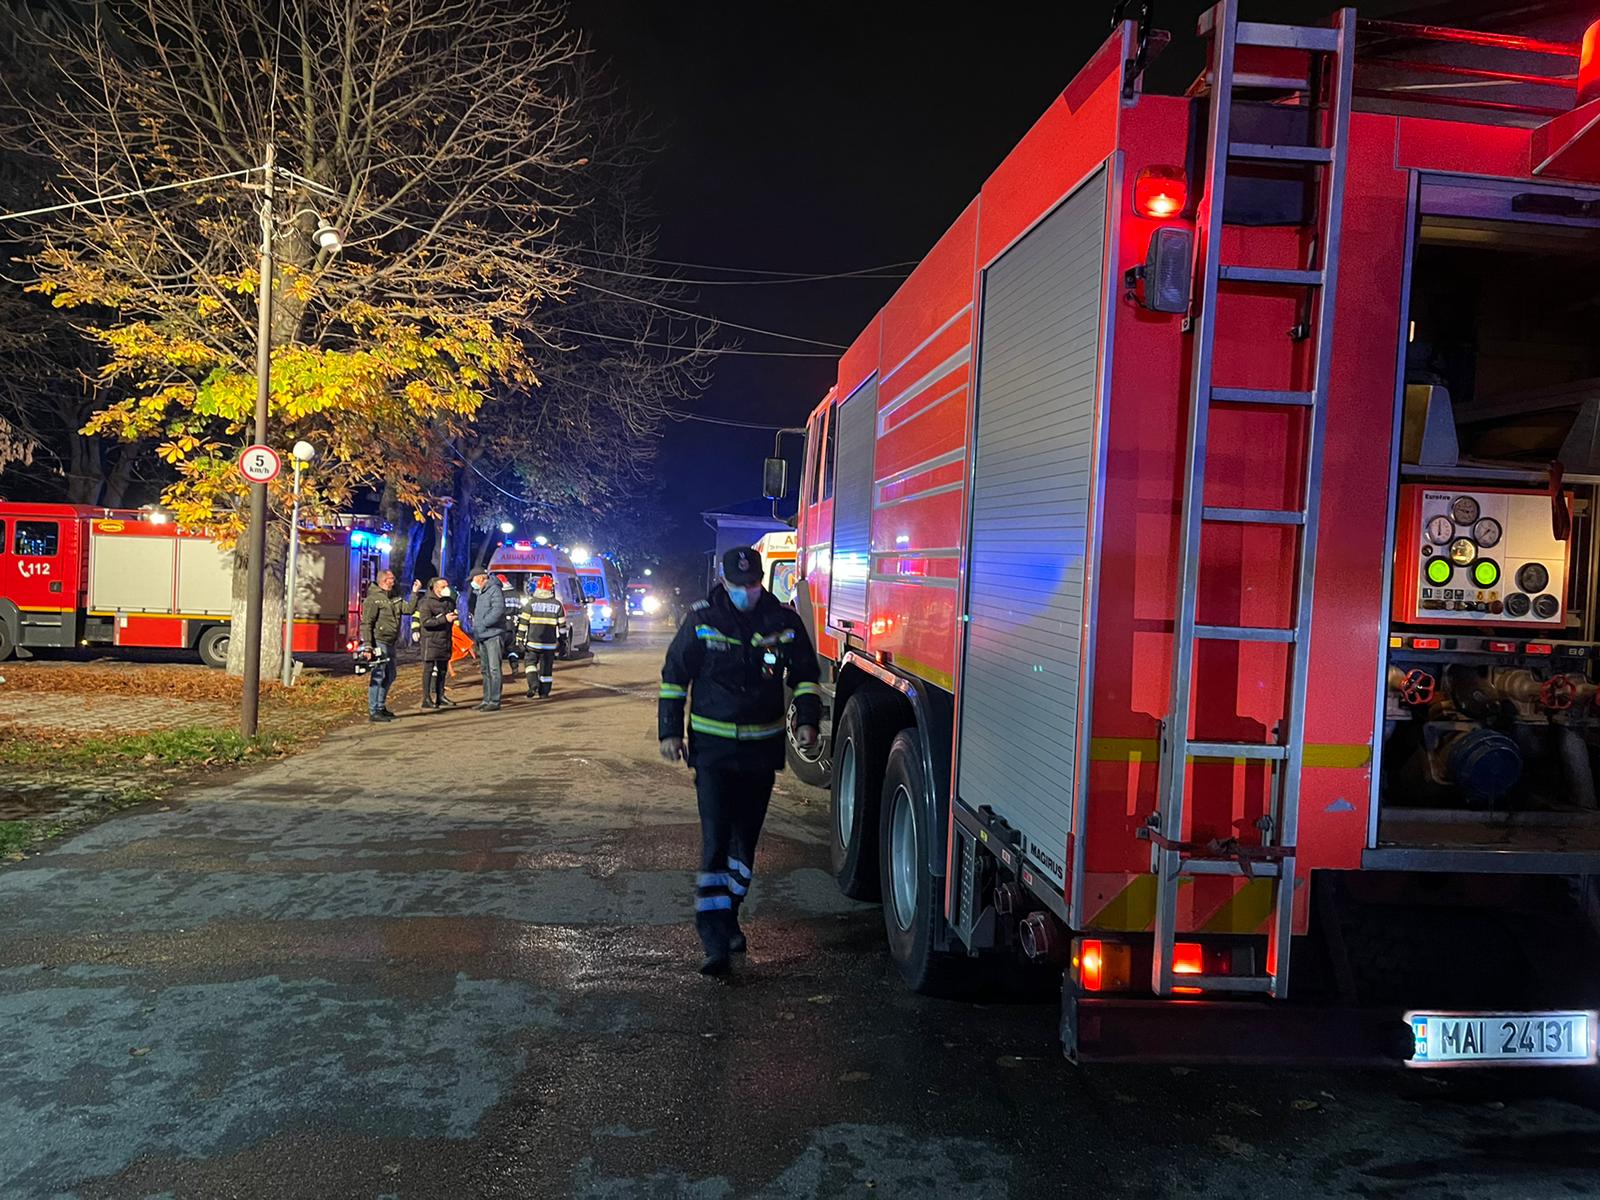 UPDATE: Incendiu la un Spital Covid 19 din Ploiești, doi morți. Secția afectată era proaspăt renovată (galerie foto)